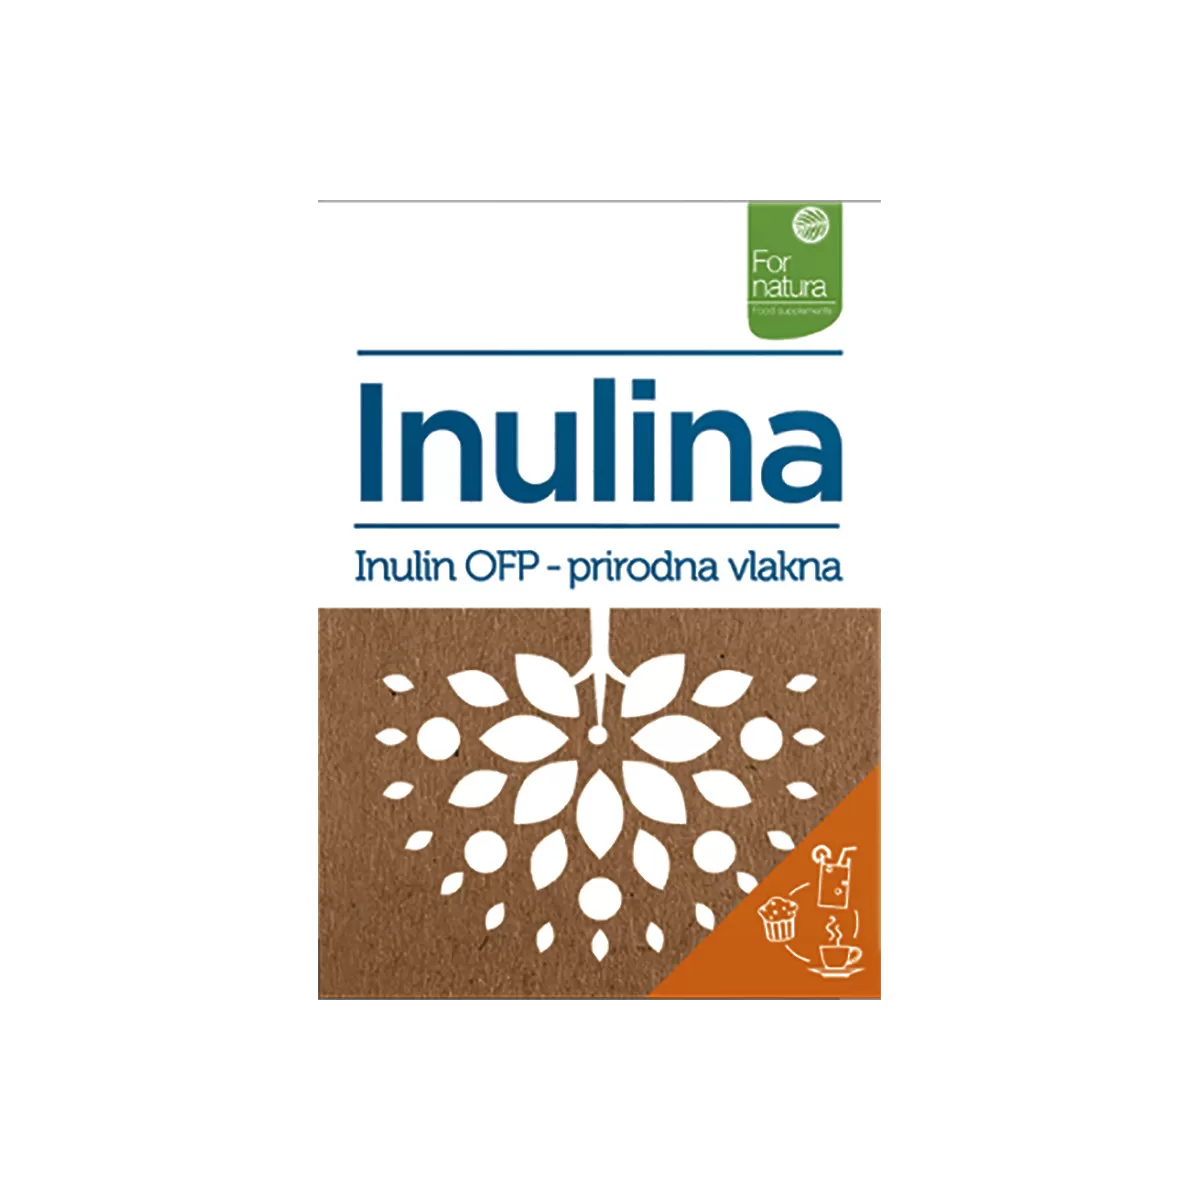 Inulina OFP-prebiotska biljna vlakna iz cikorije, 75g 